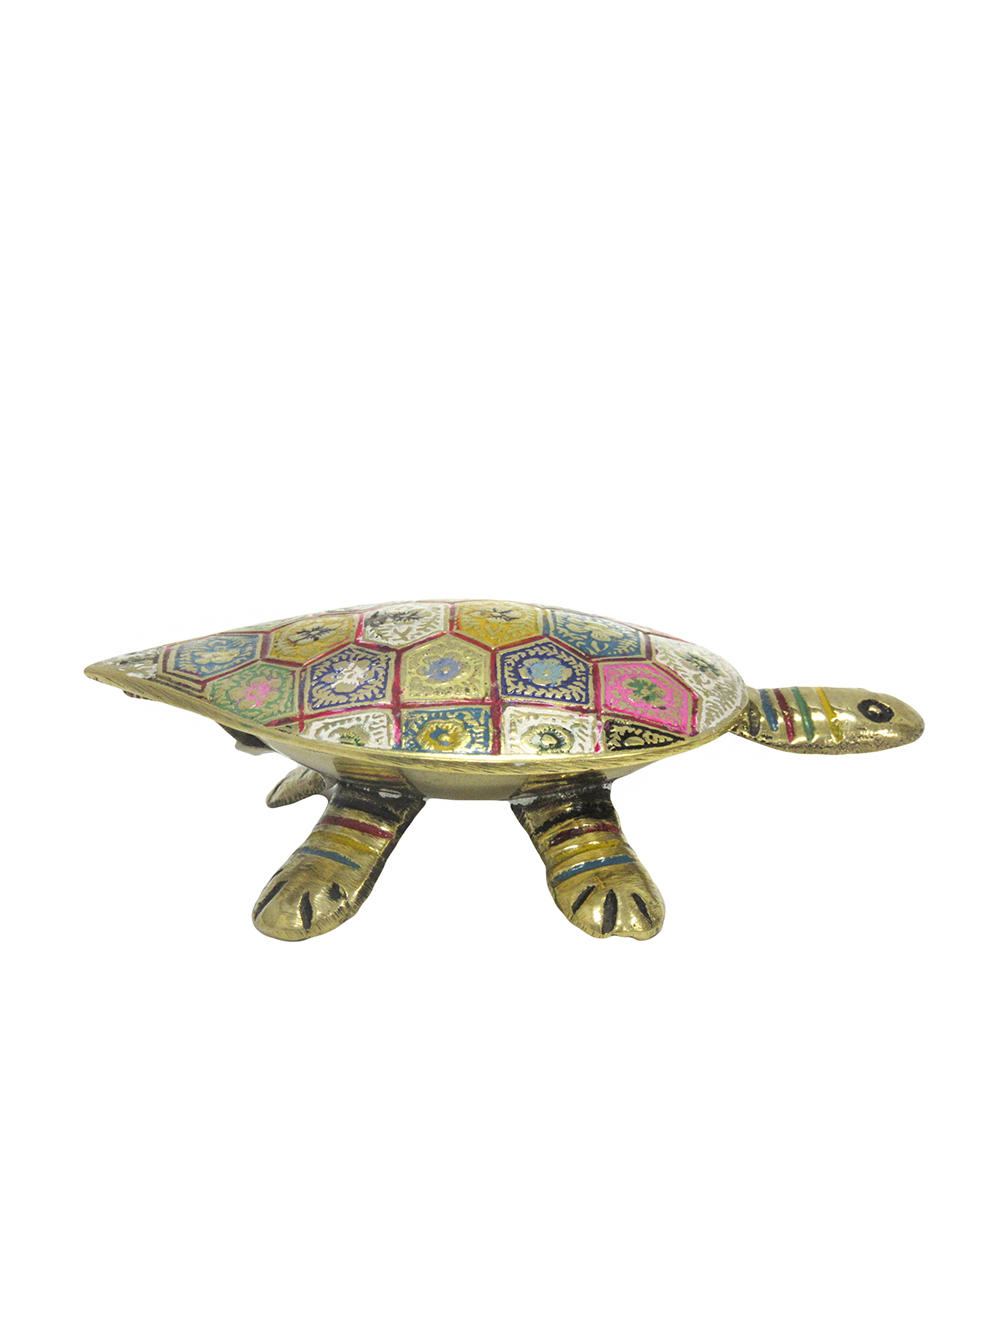 Шкатулка черепаха латунь с цветной эмалью 4,75